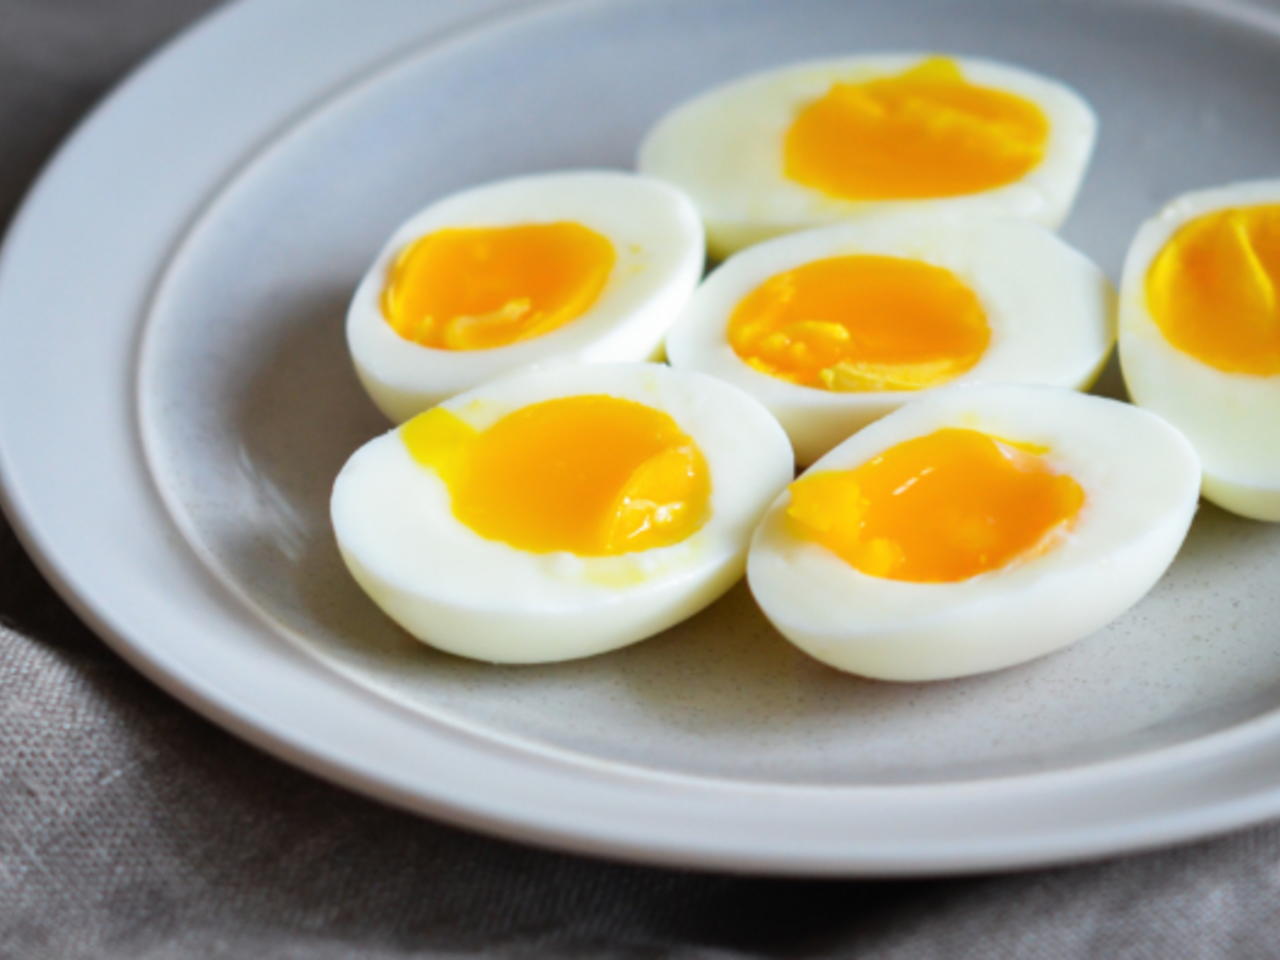 بيض مسلوق ومغلف يرتبط بعدوى خطيرة تفشت في امريكا!